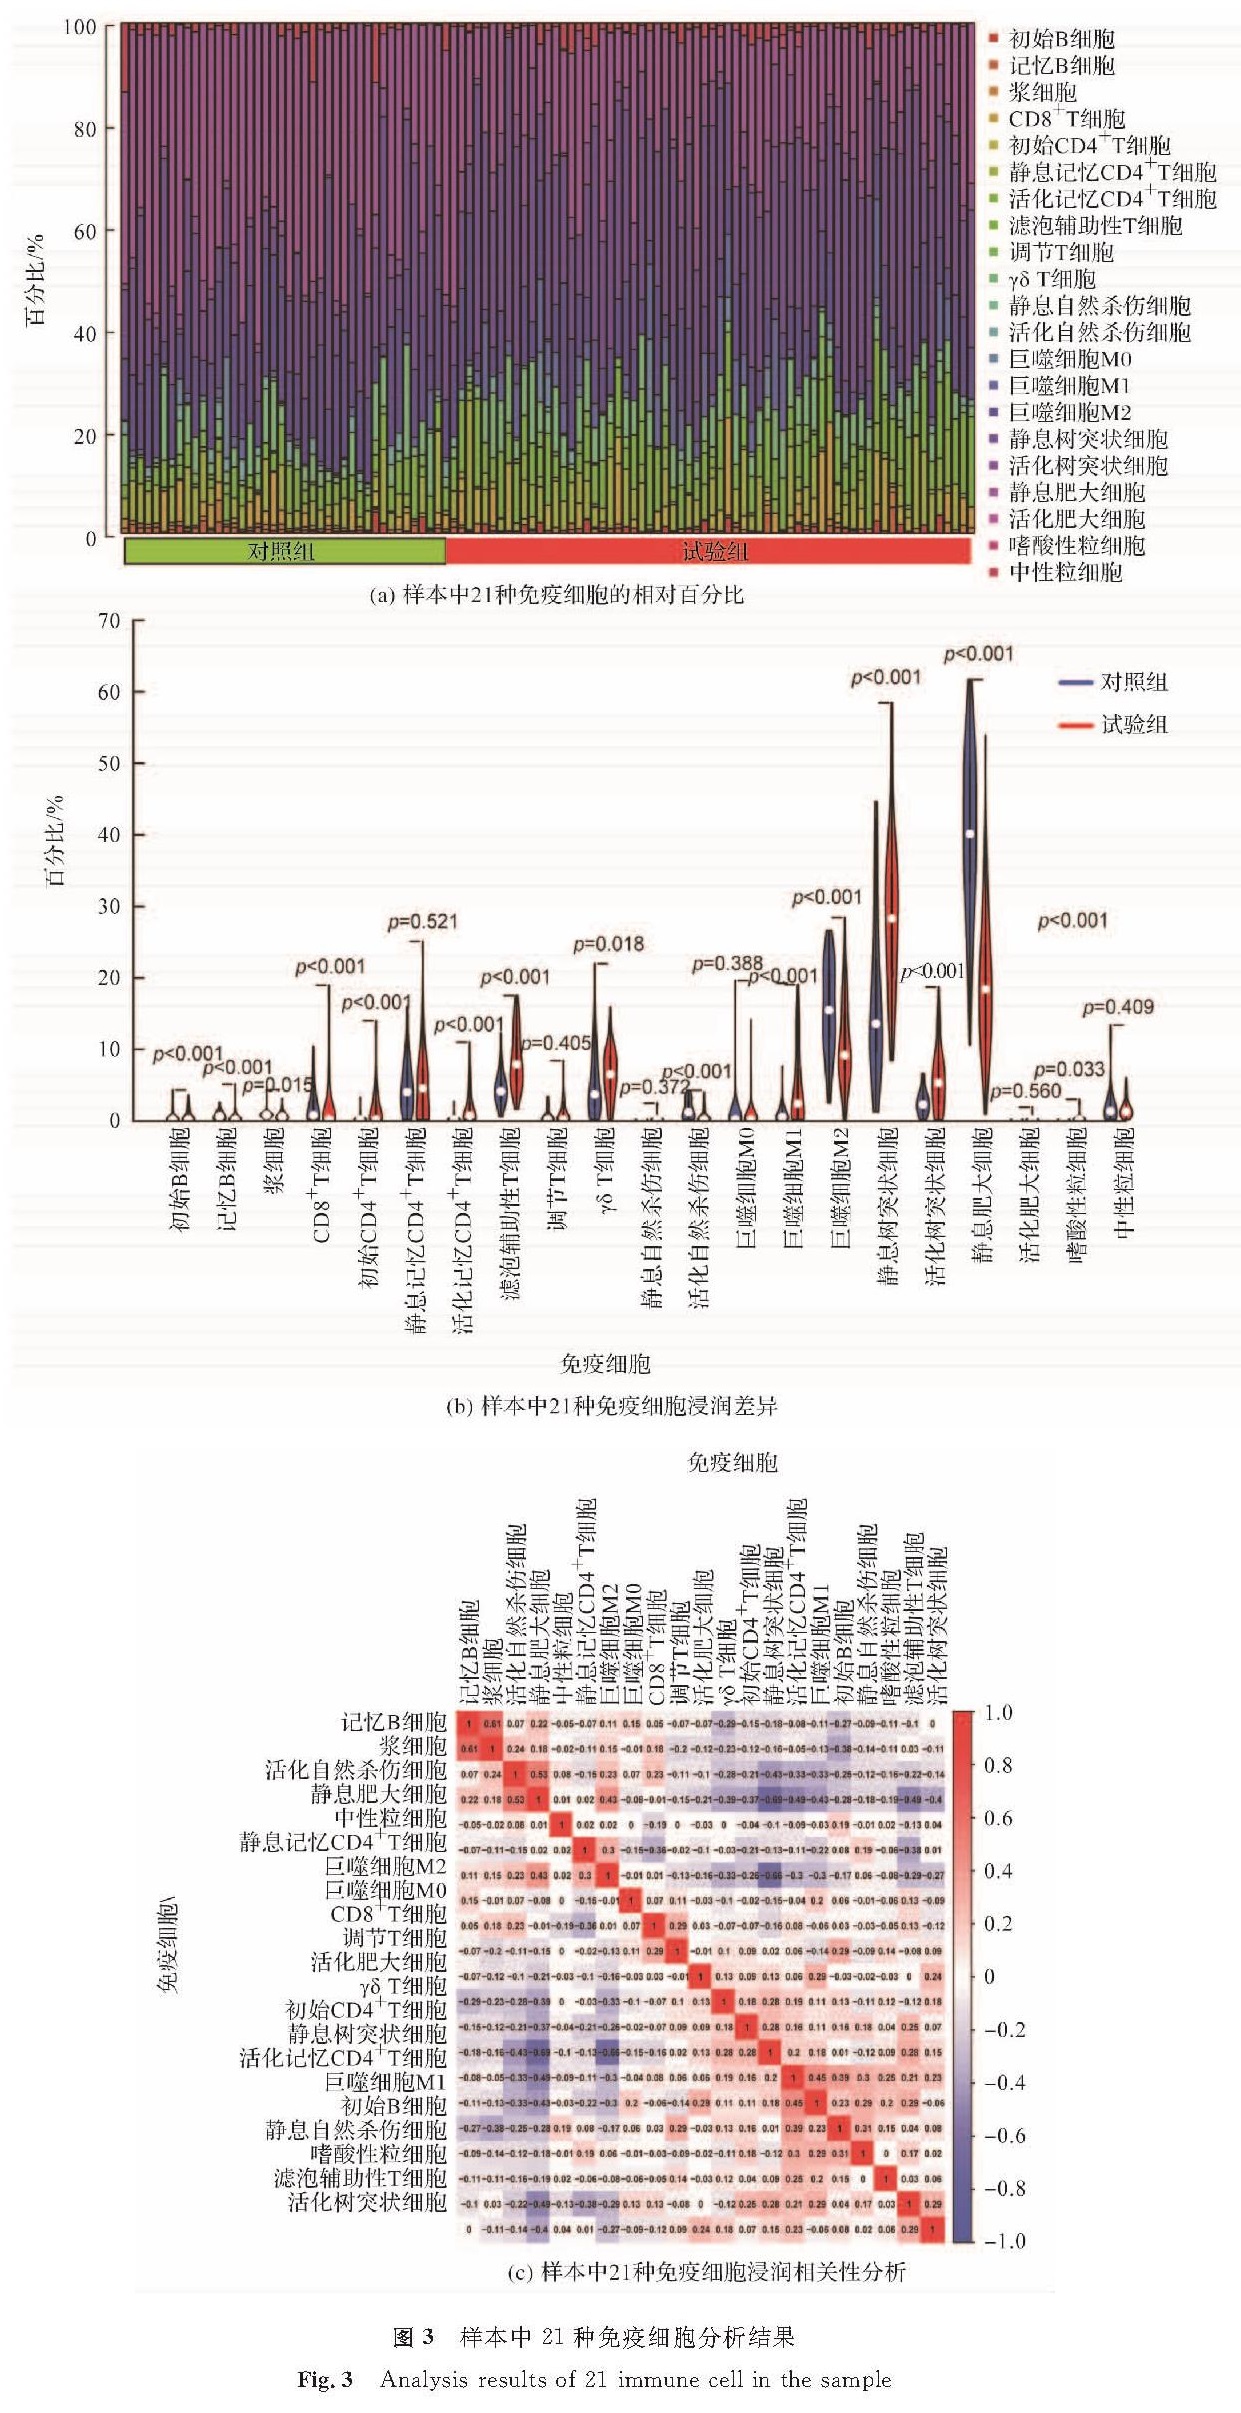 图3 样本中21种免疫细胞分析结果<br/>Fig.3 Analysis results of 21 immune cell in the sample